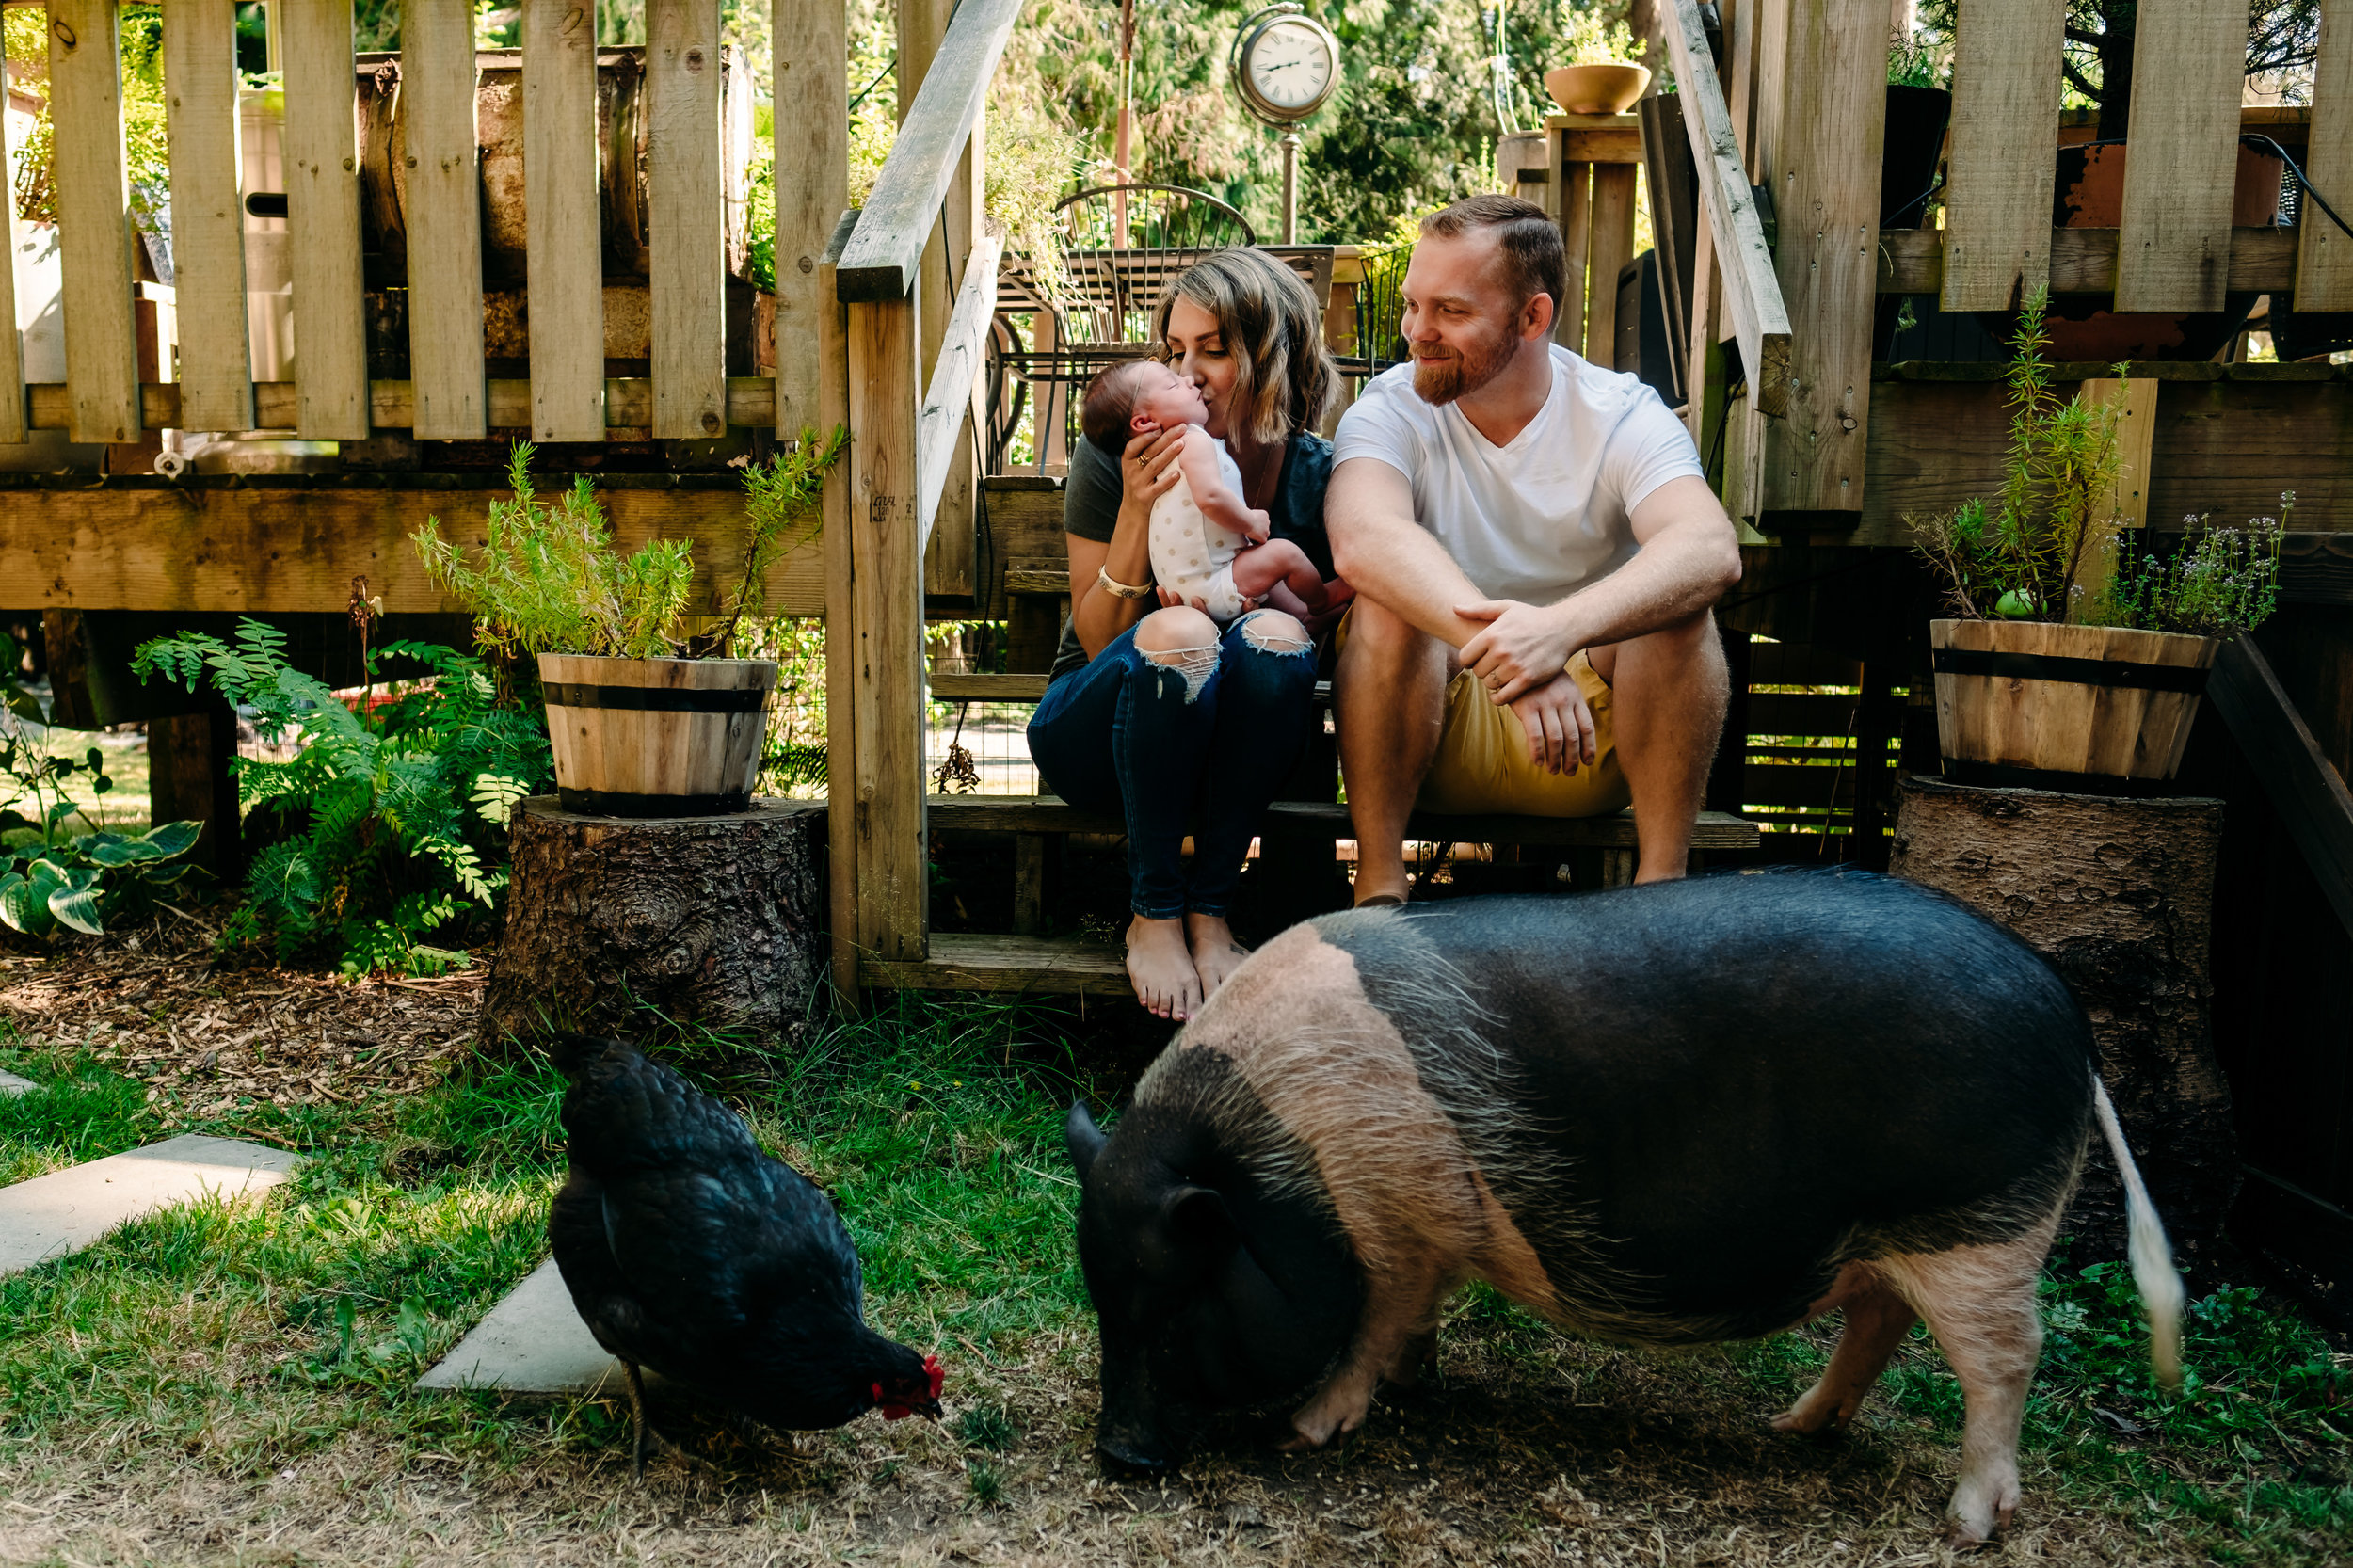 family-newborn-adoption-pig-chicken-porch.jpg